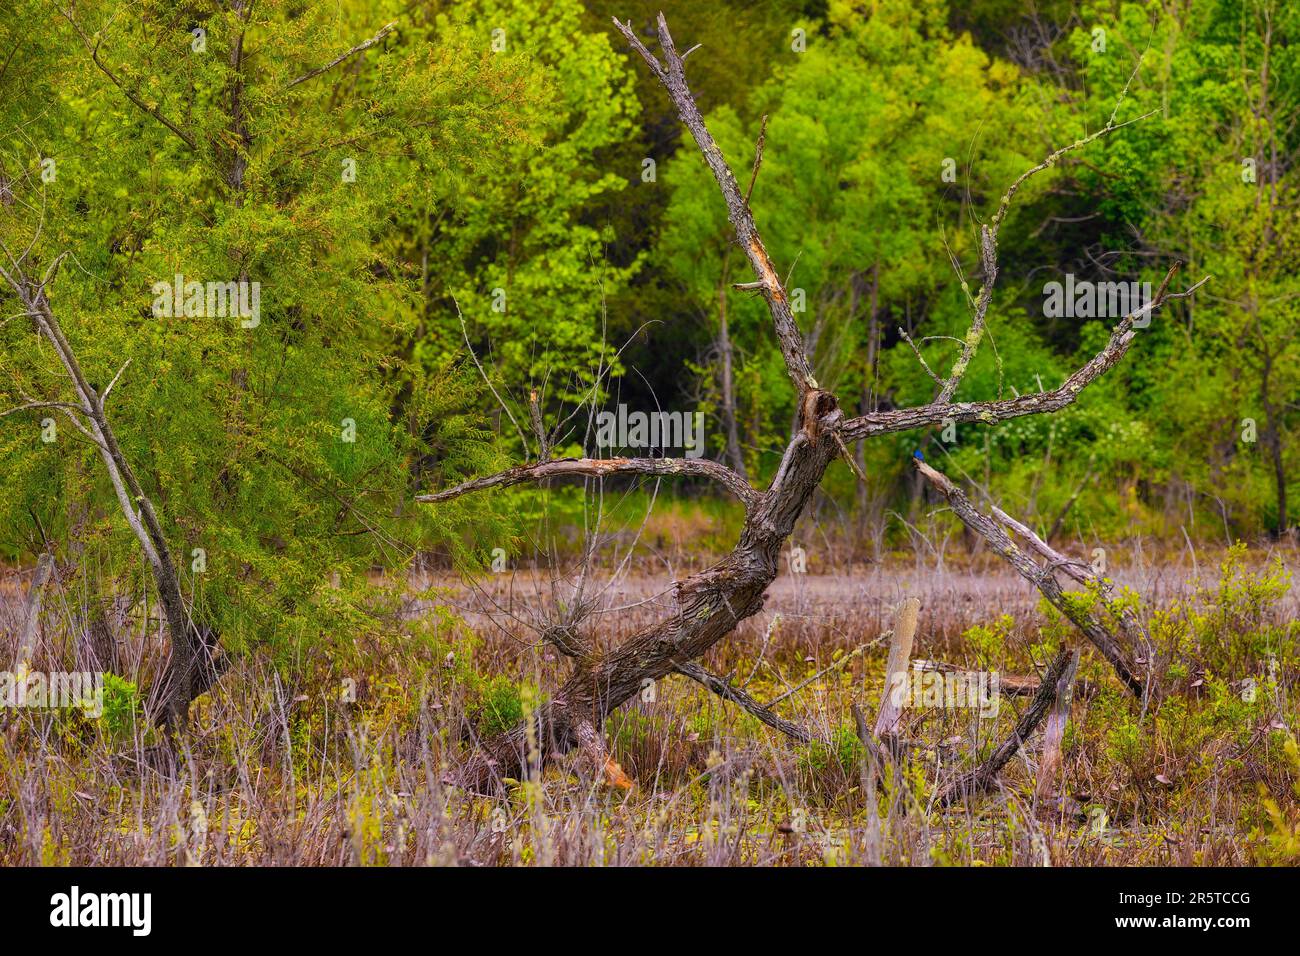 Toter Baum während eines Spaziergangs durch die Natur im Frühling auf dem Phipps Bend Trail in der Nähe von Church Hill, Tennessee. Stockfoto